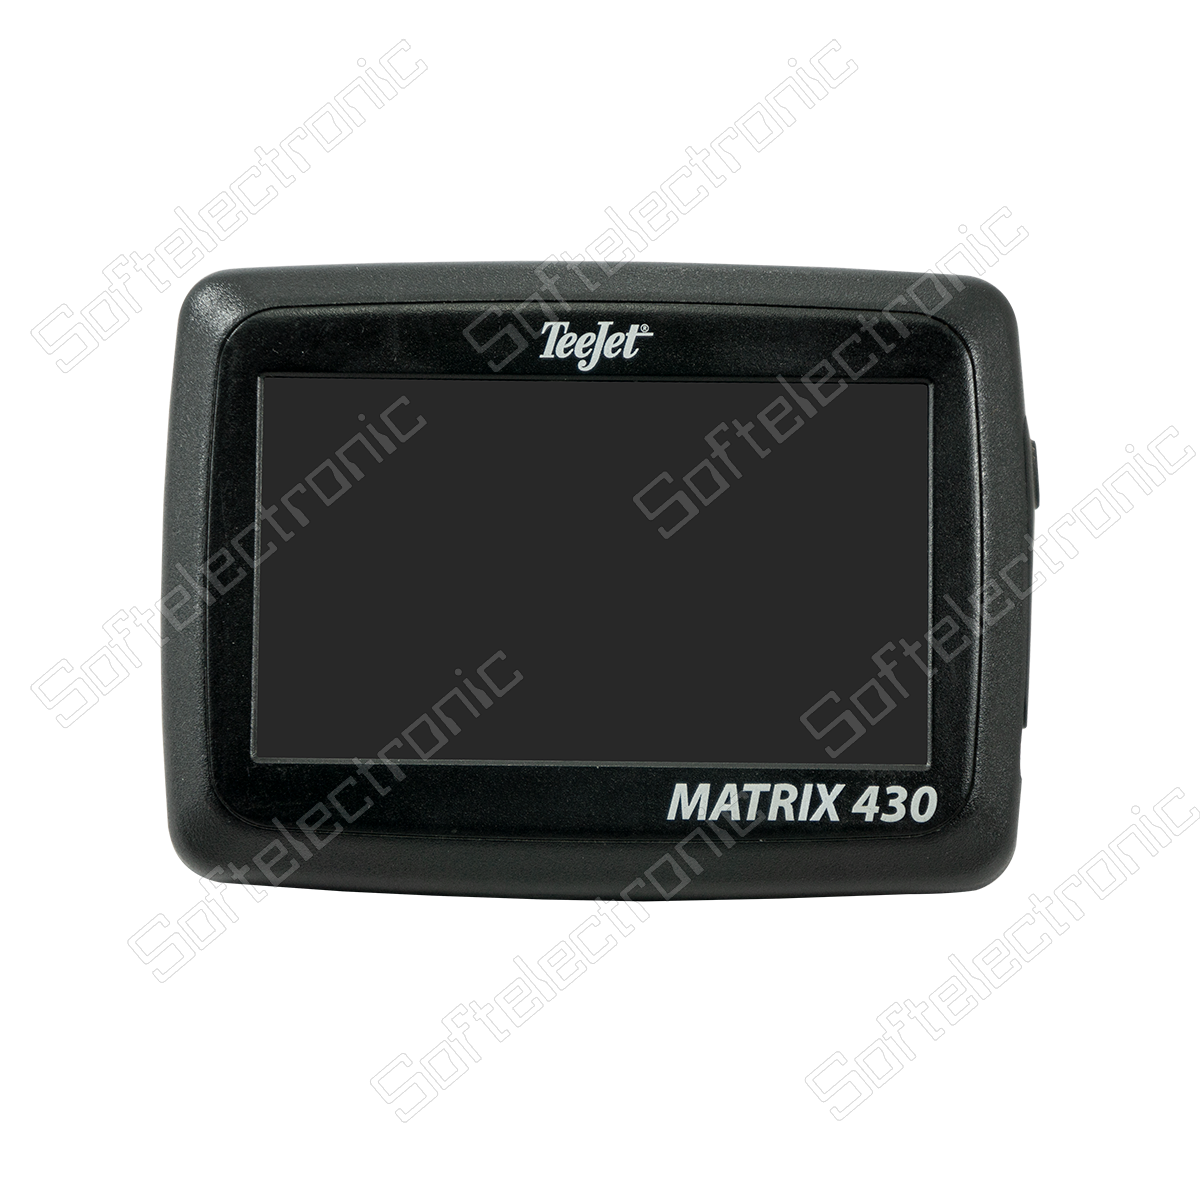 Repair of the Matrix 430 GPS system